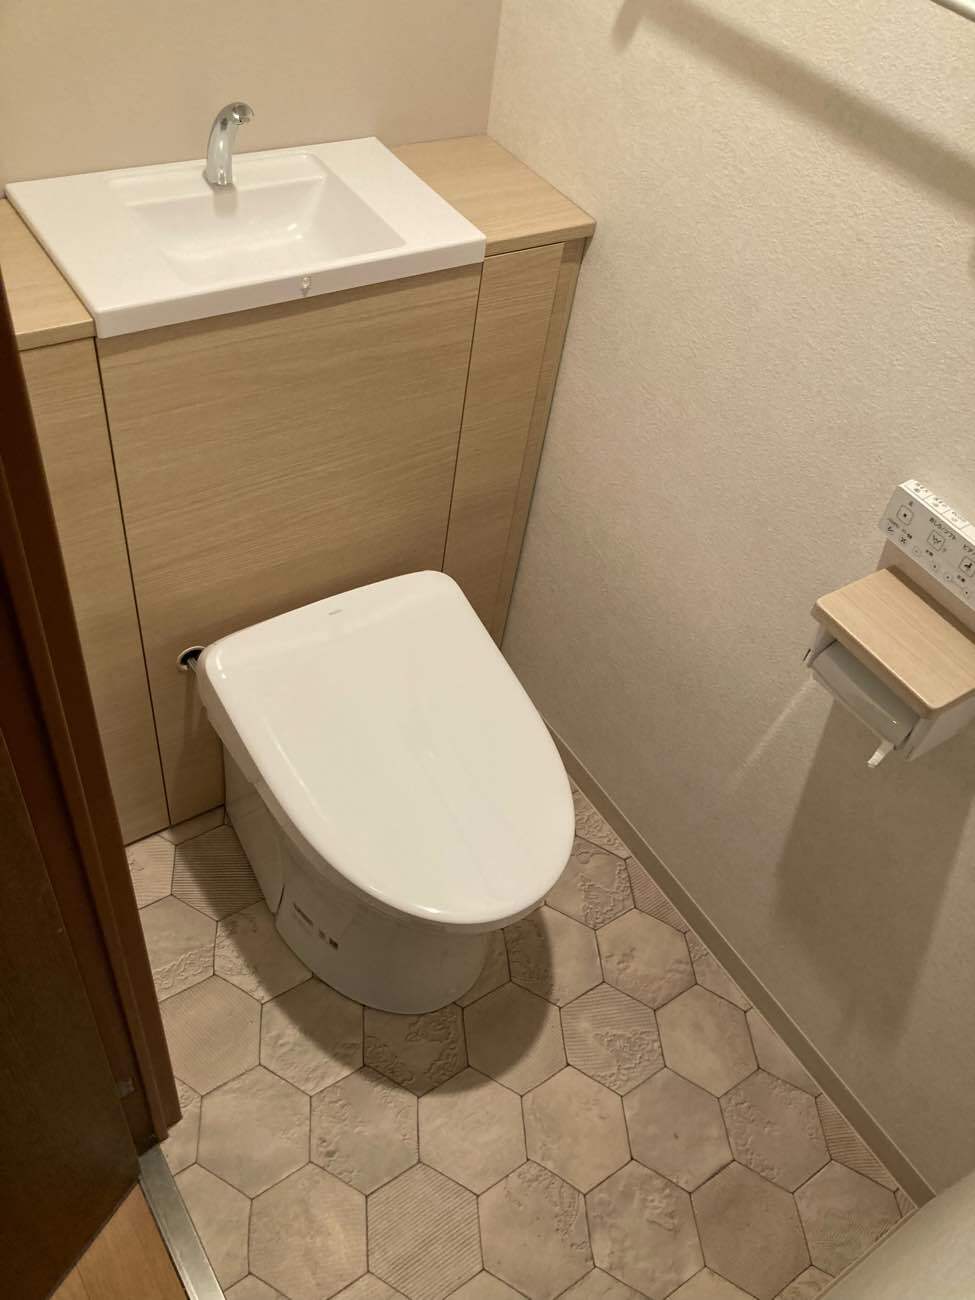 【埼玉県三郷市】A様邸トイレ交換工事が完了しました。TOTOレストパル 画像